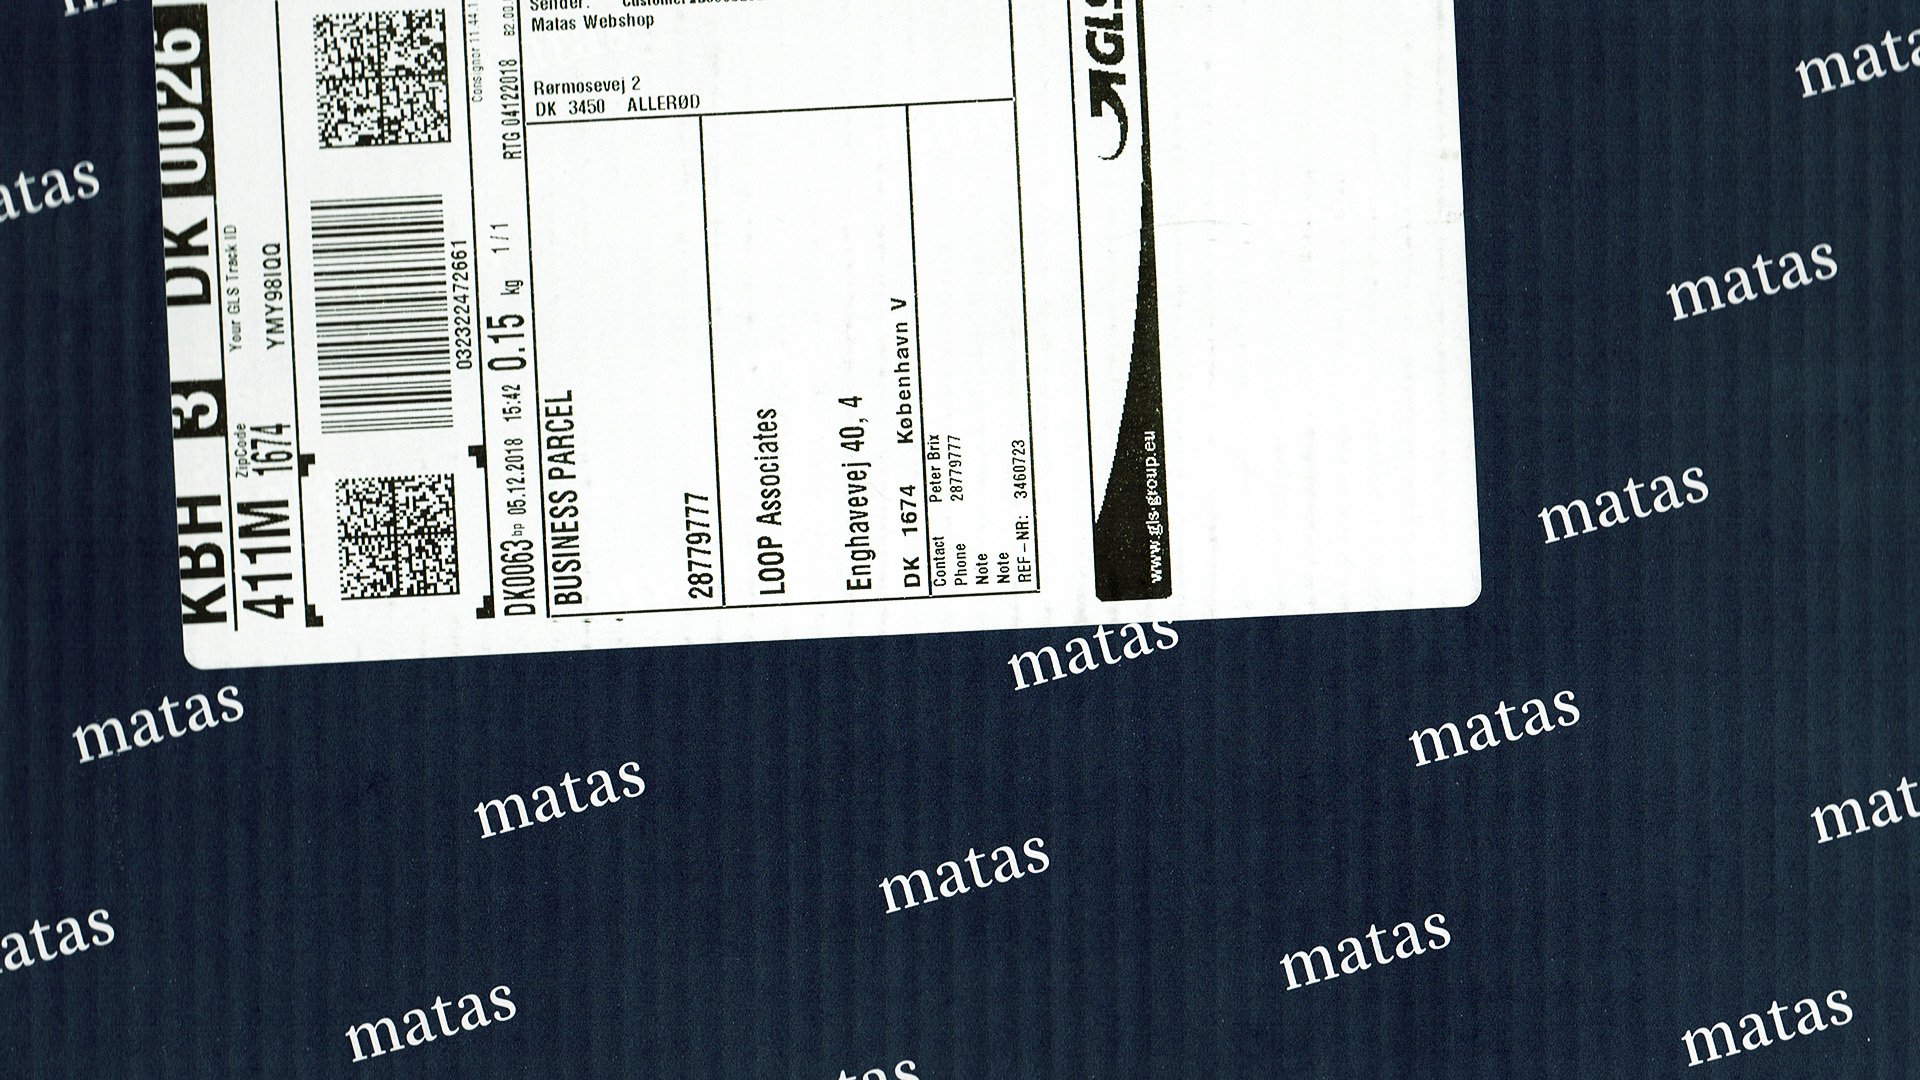 Matas package box by LOOP Associates